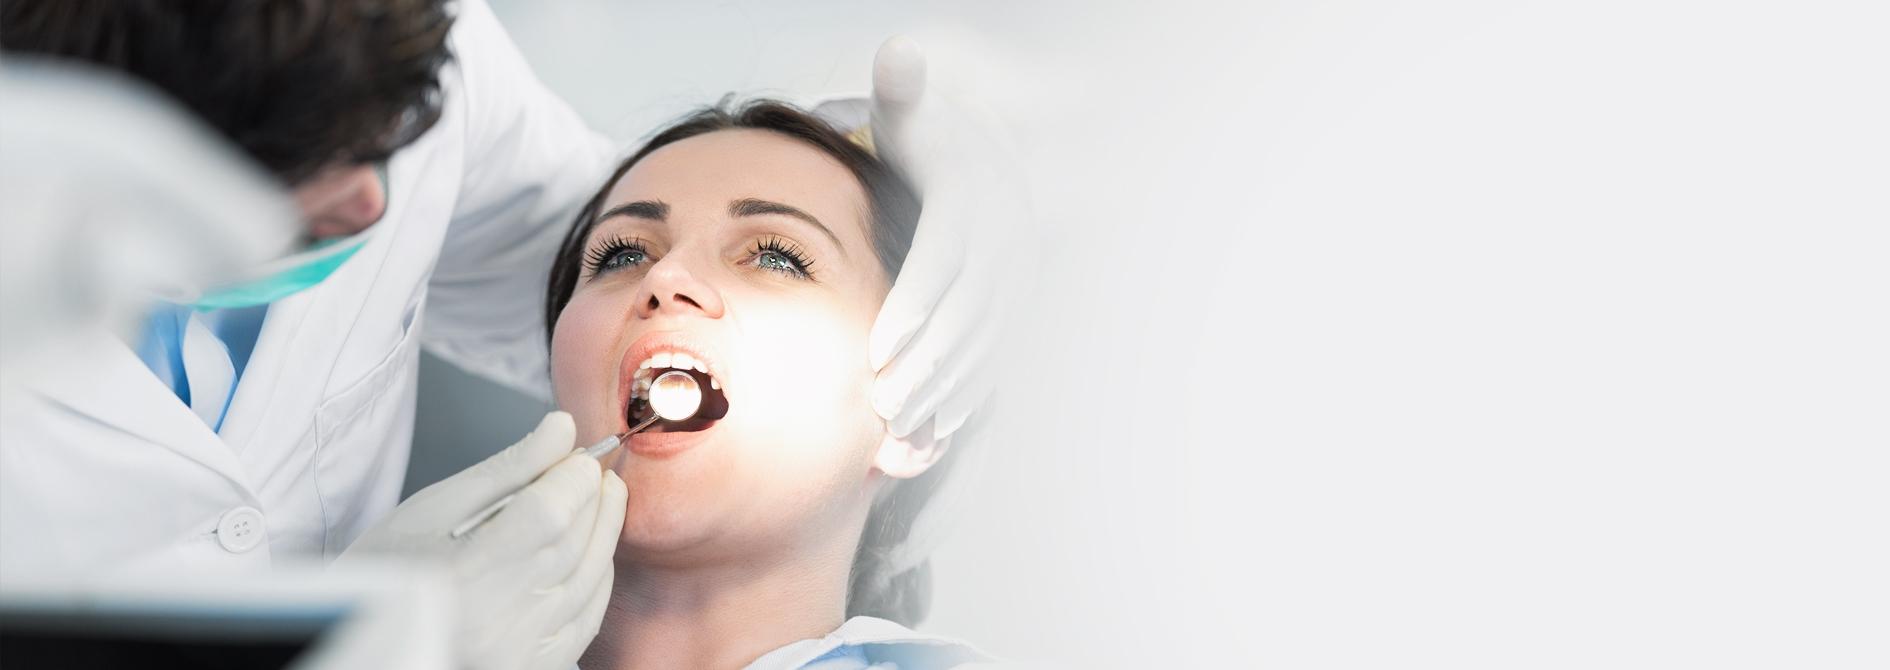 oglądanie uzębienia lusterkiem - Slajd #4 - Dental s.c.